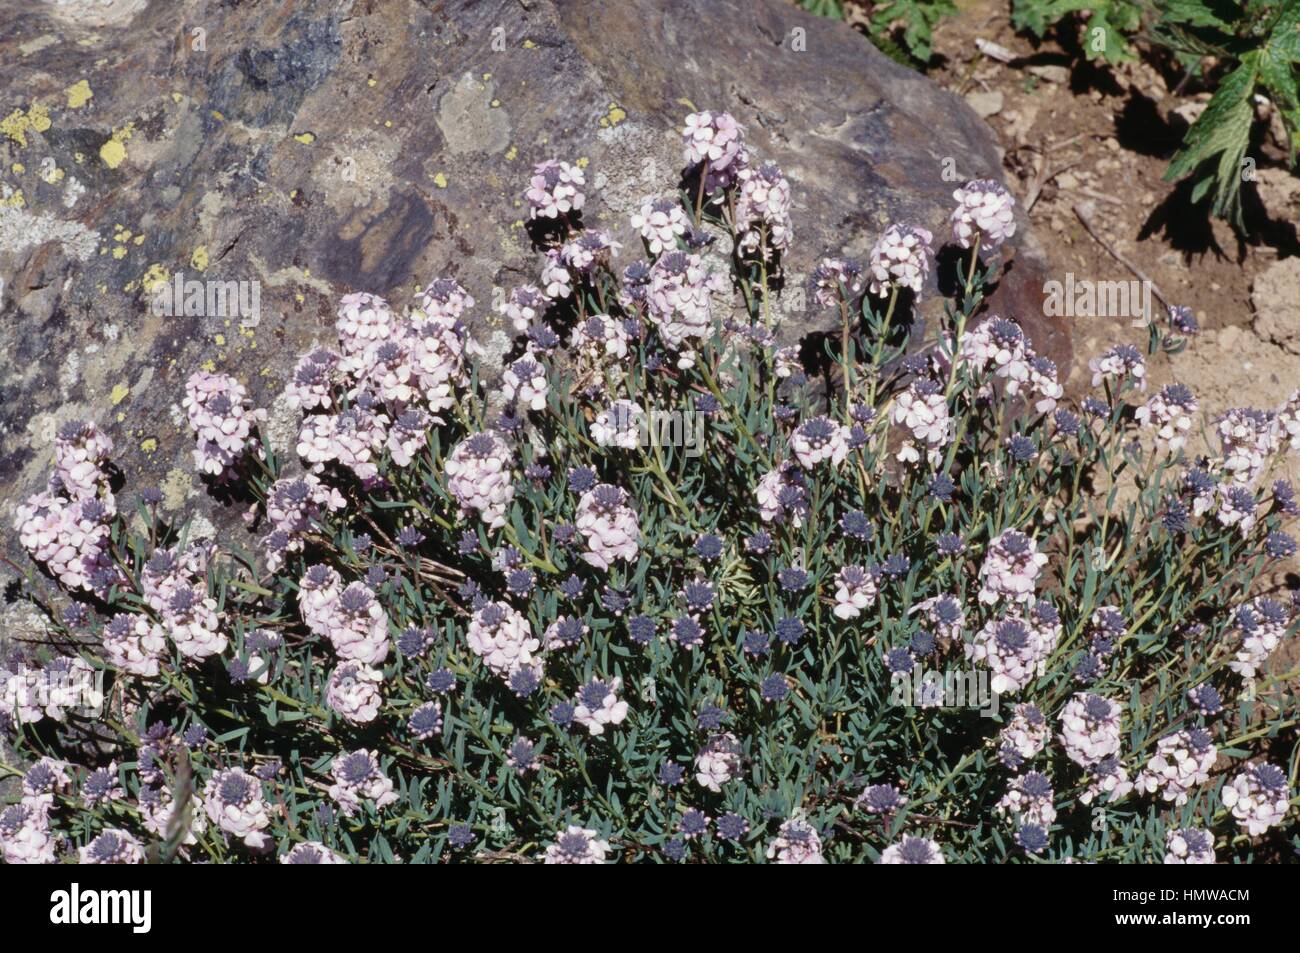 Persian stonecress (Aethionema grandiflorum), Brassicaceae. Stock Photo